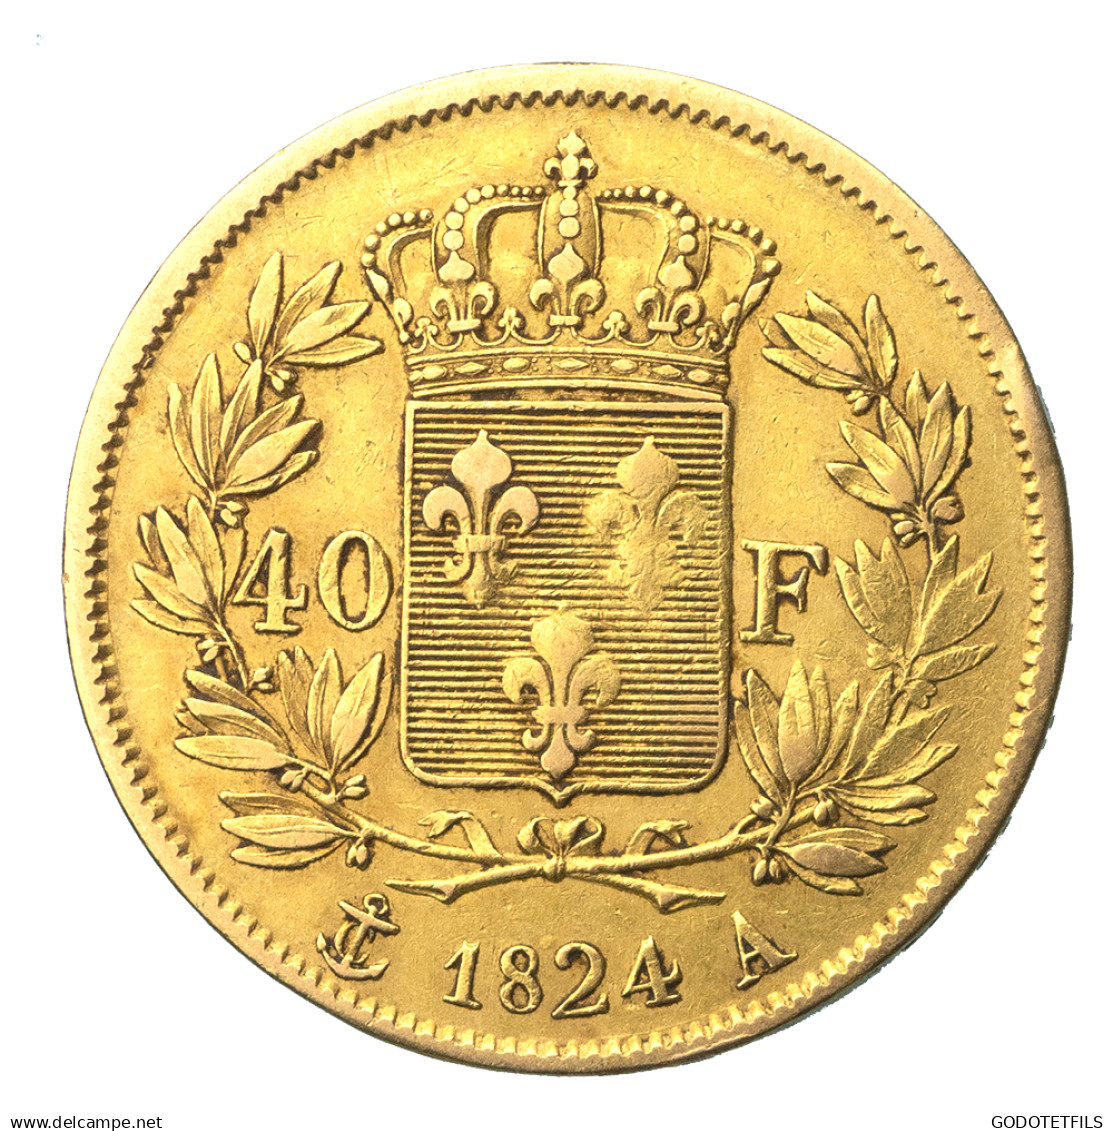 Louis XVIII-40 Francs 1824 Paris - 40 Francs (gold)